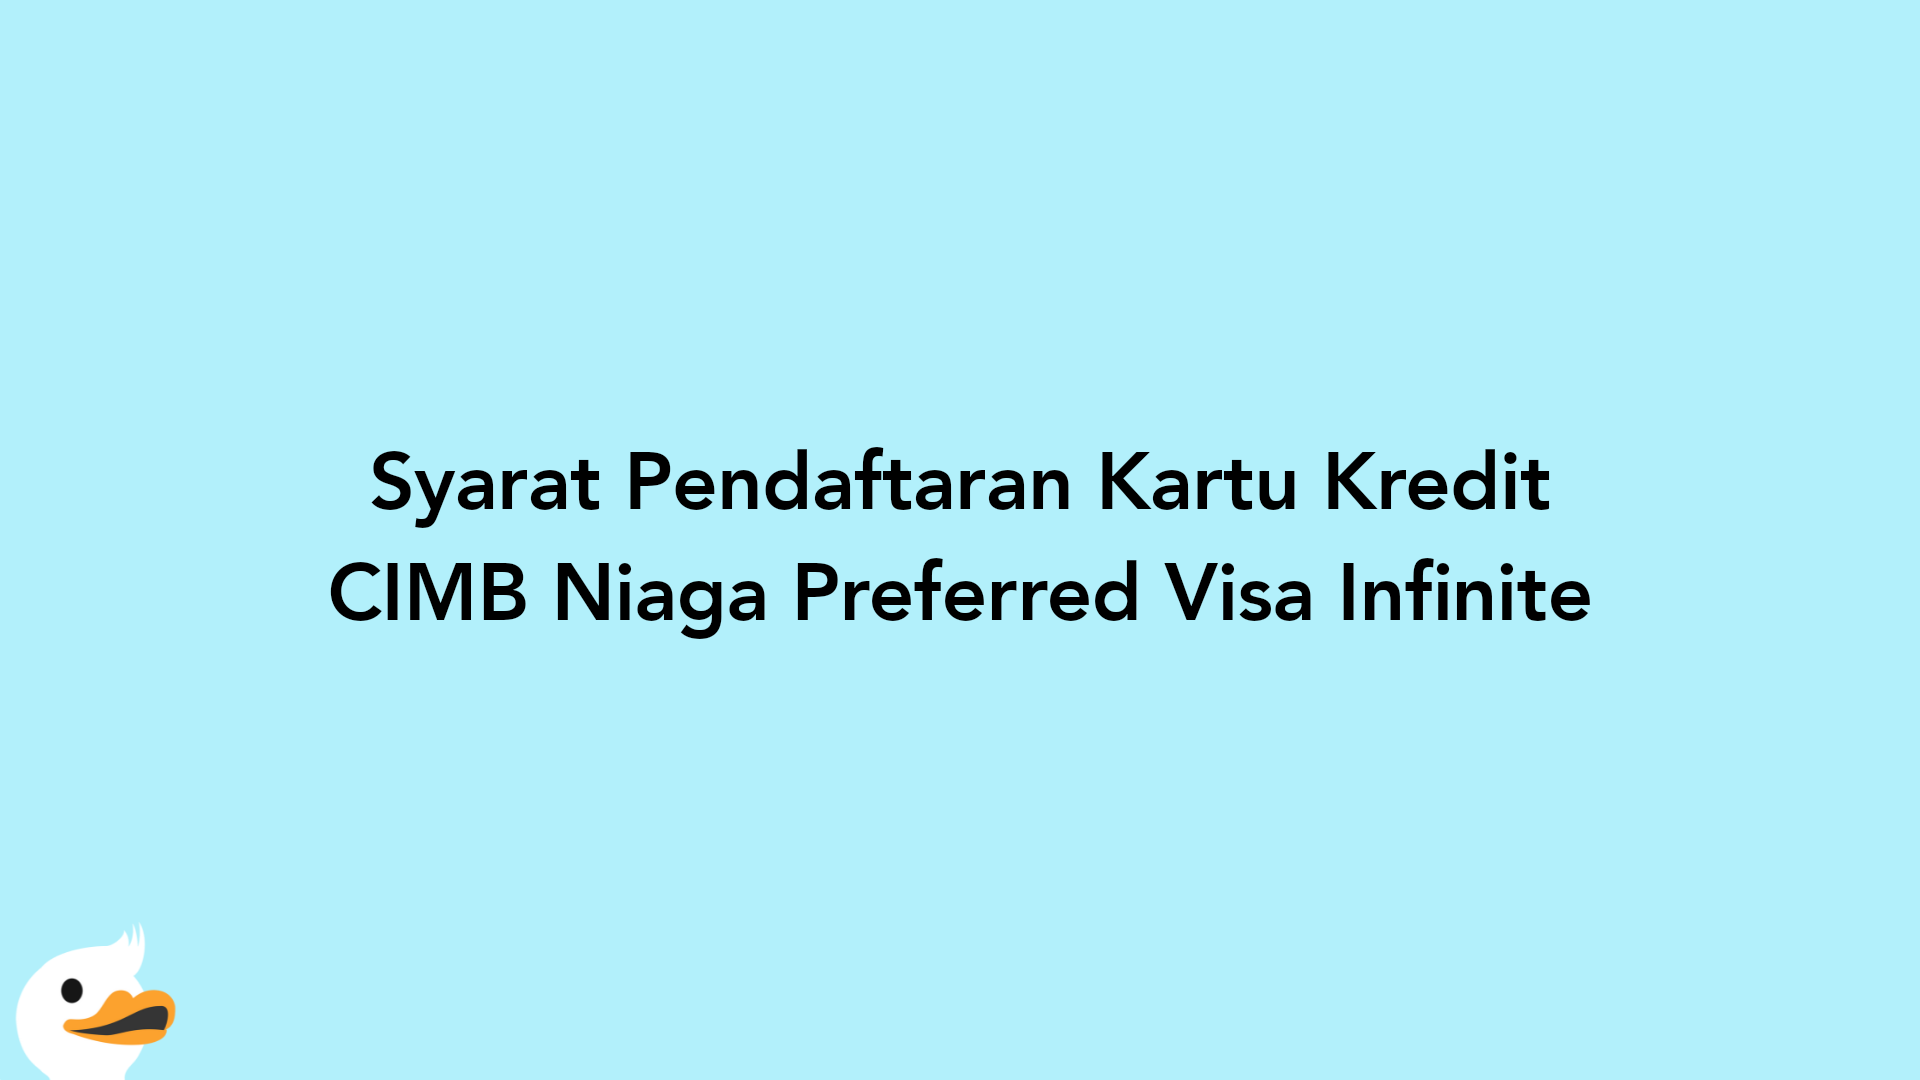 Syarat Pendaftaran Kartu Kredit CIMB Niaga Preferred Visa Infinite